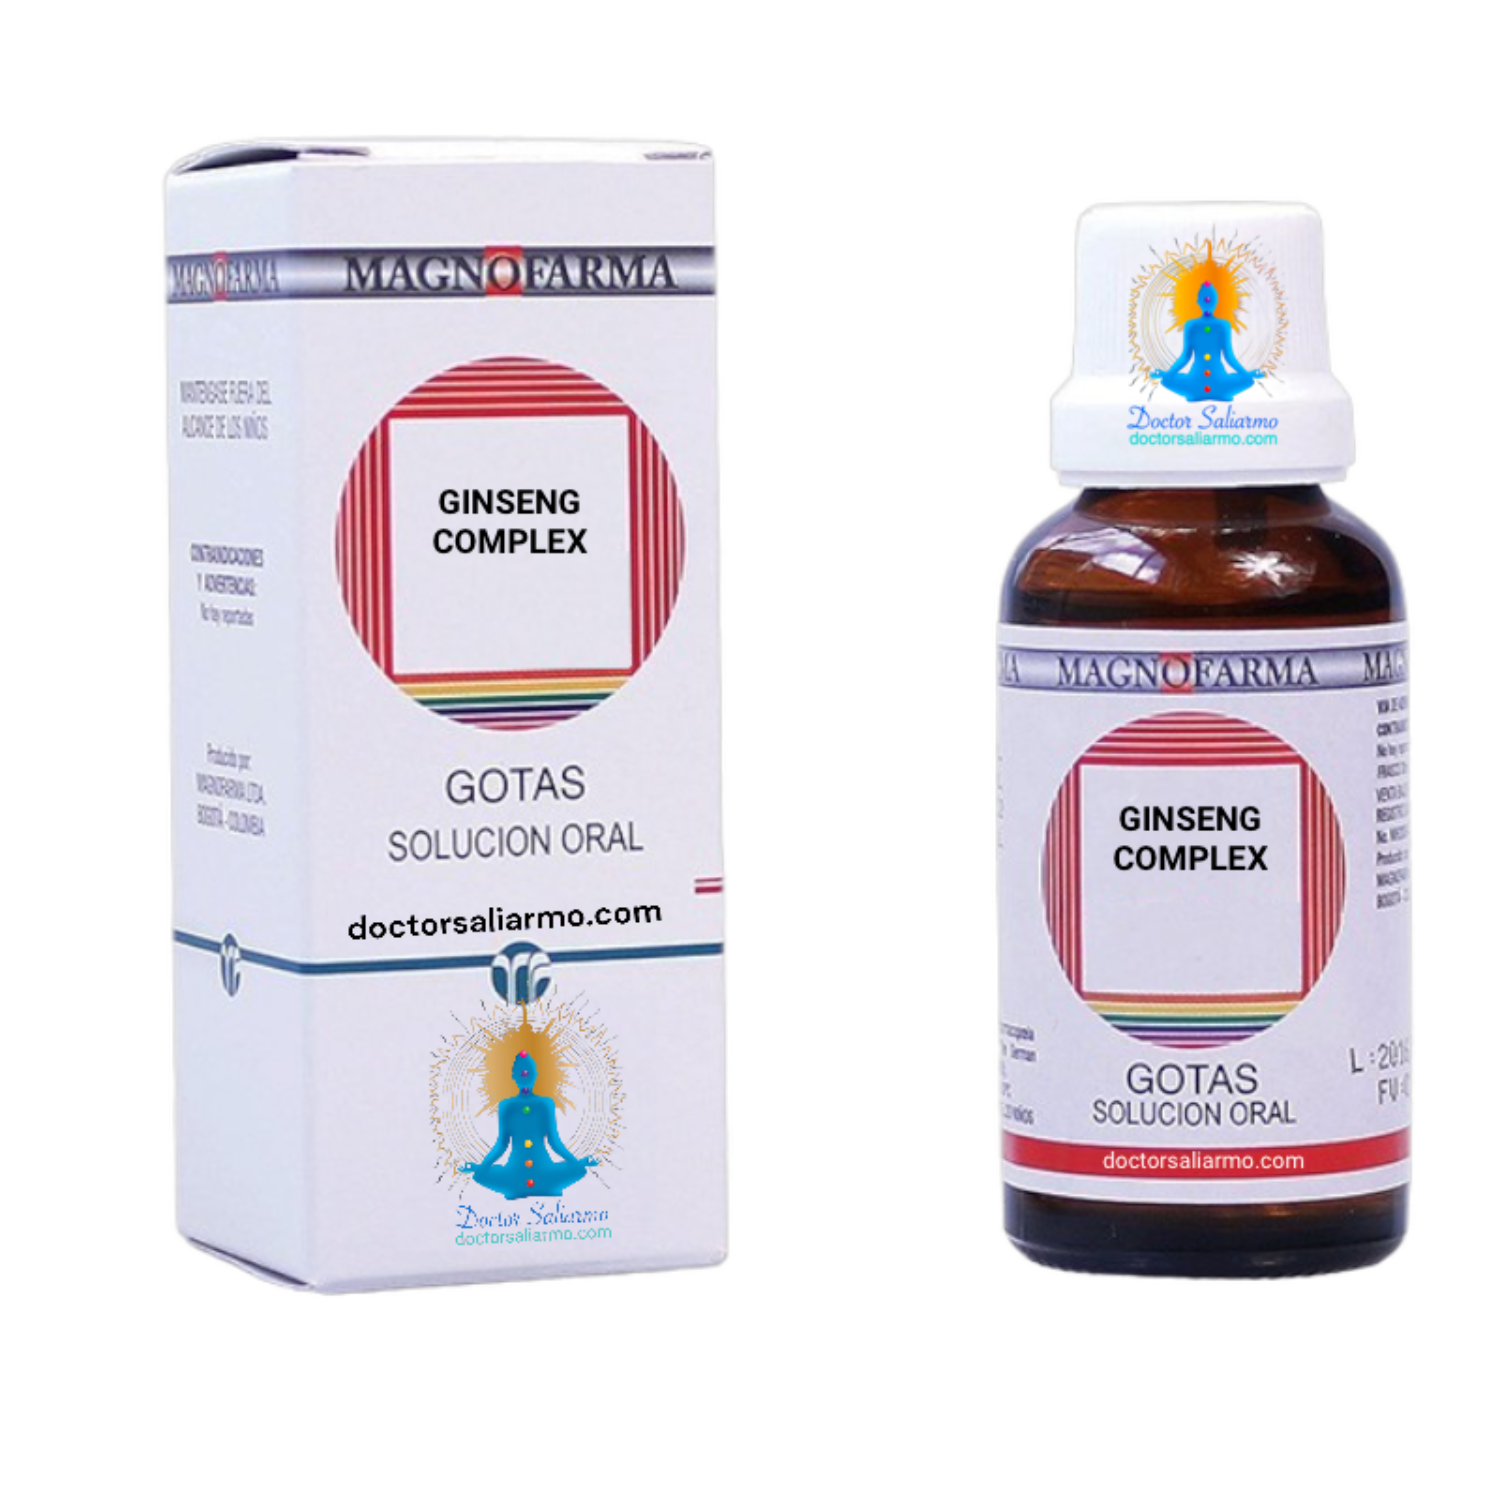 Ginseng Complex medicamento homeopático indicado para sobrecargas toxicas del sistema defensivo, como agente revitalizante.